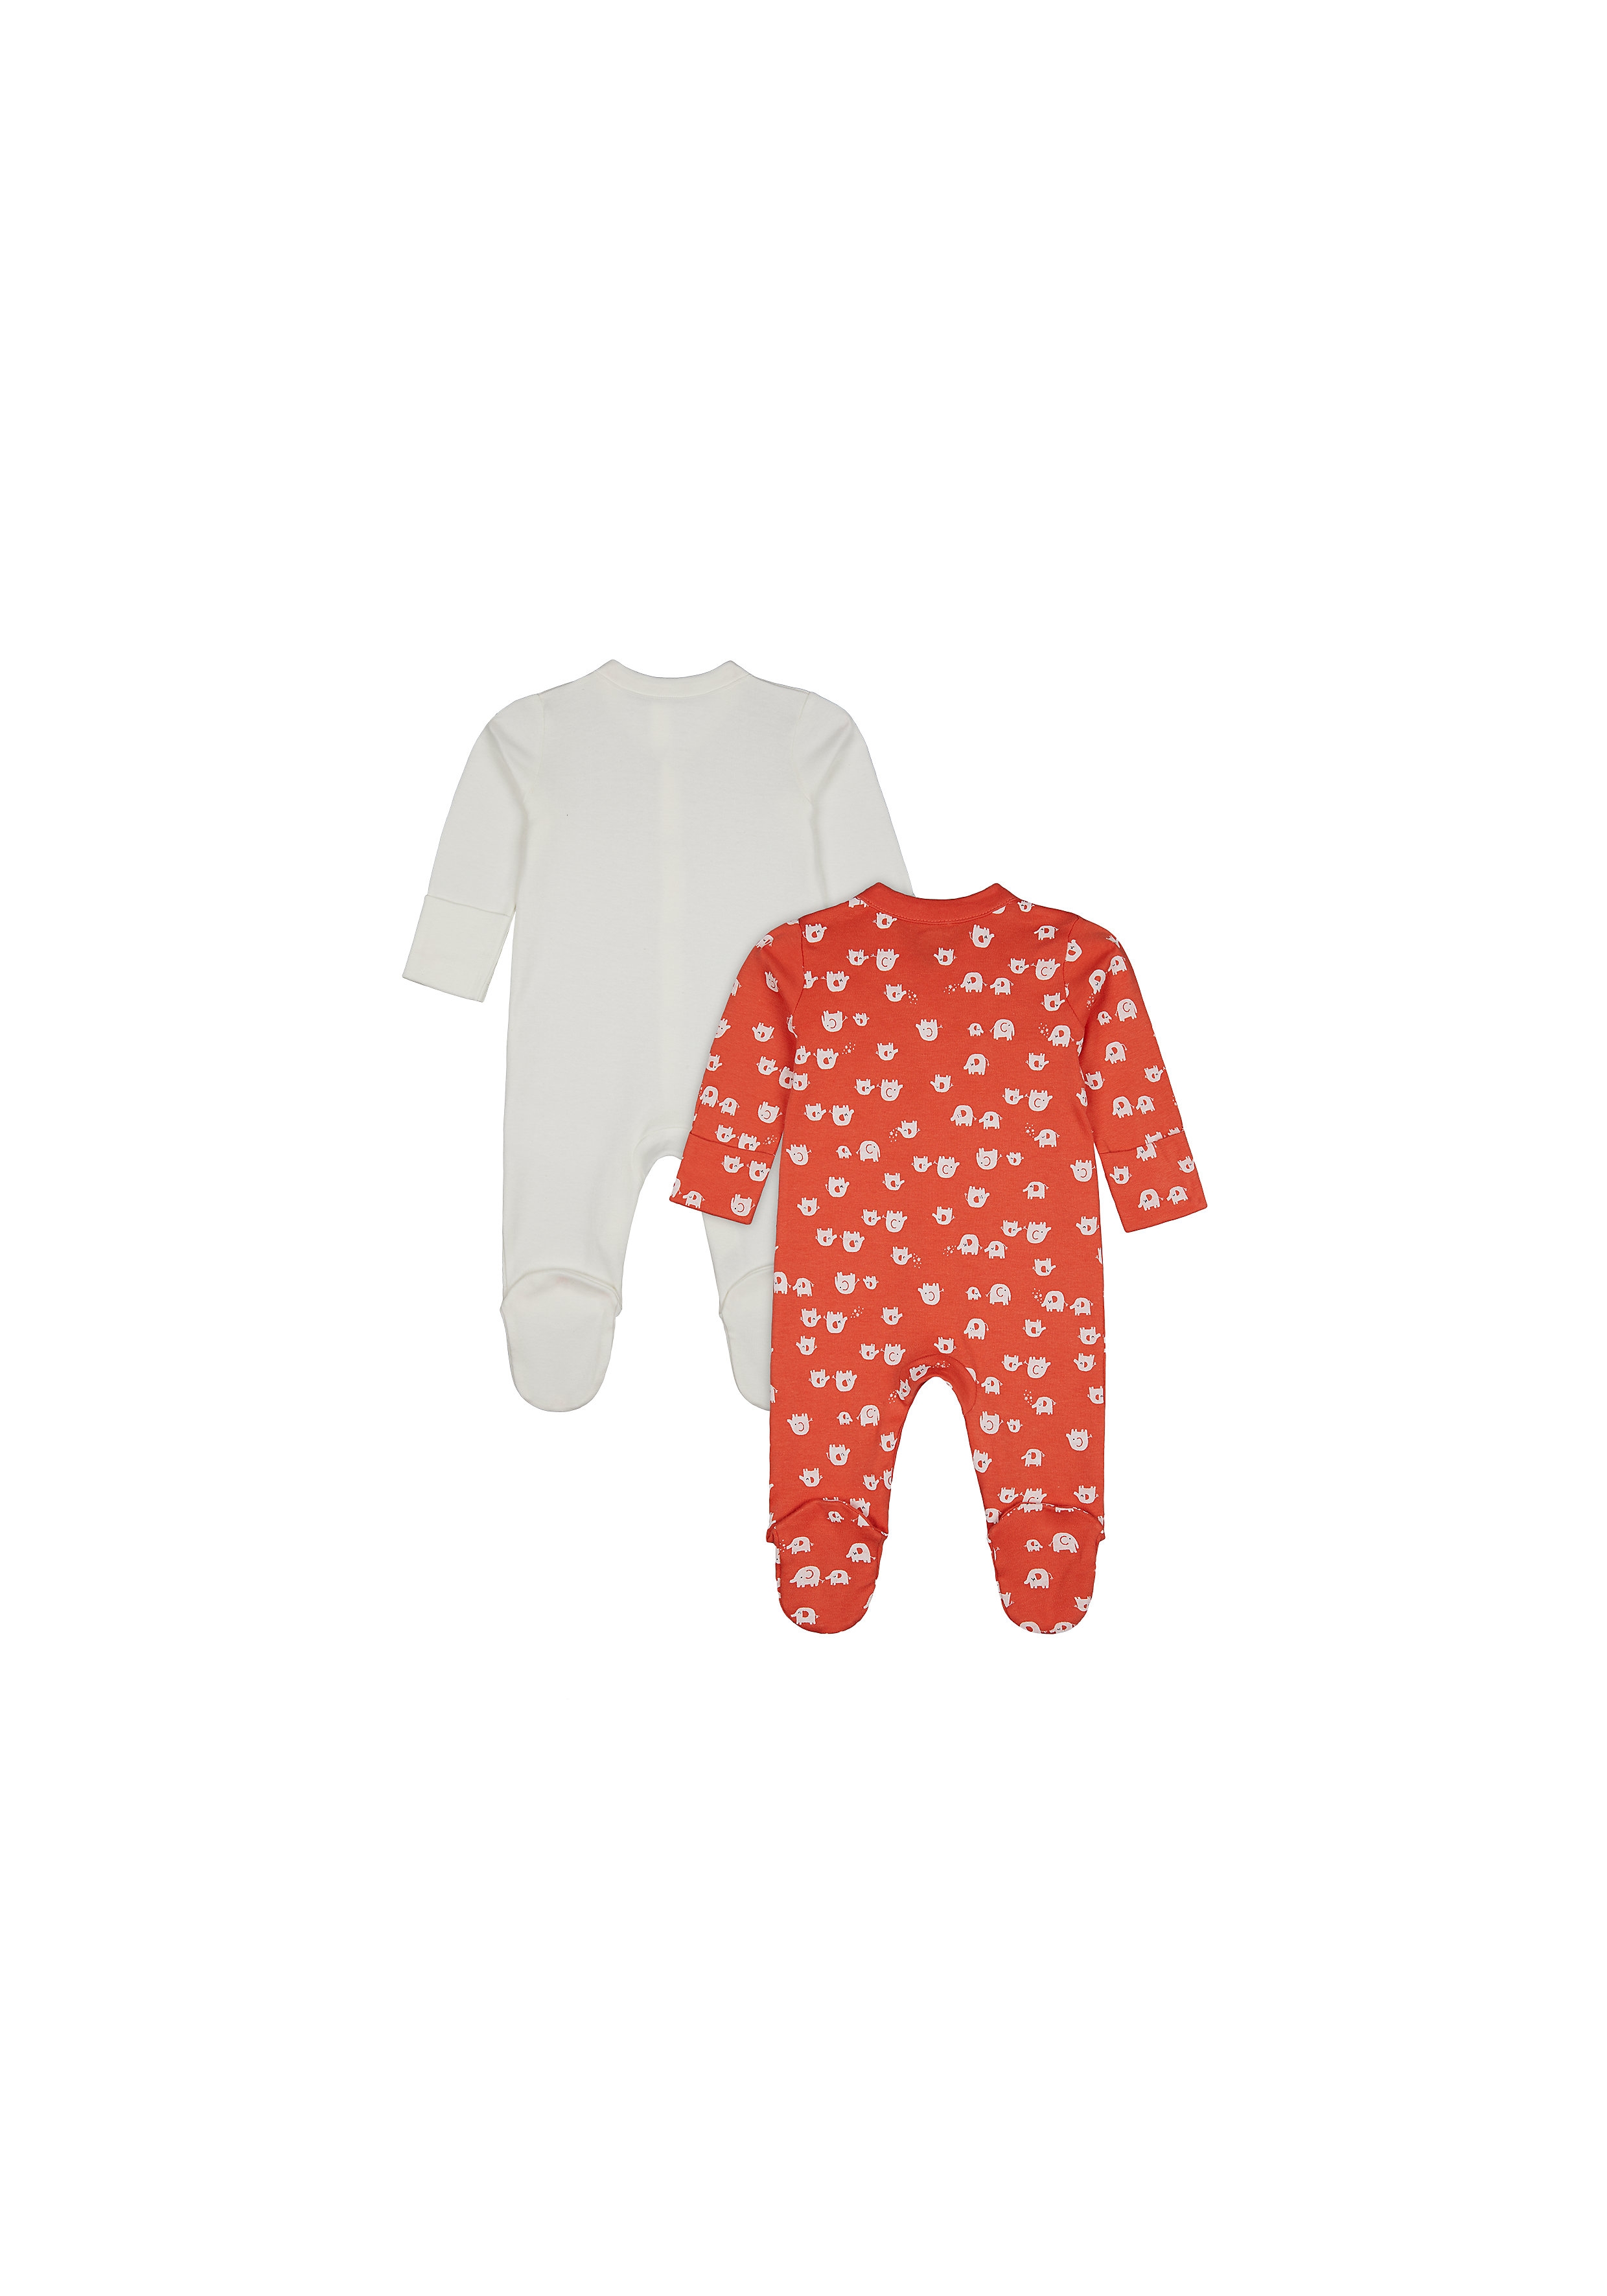 Mothercare | Unisex Full Sleeves Romper Elephant Print - Pack Of 2 - Orange Cream 1